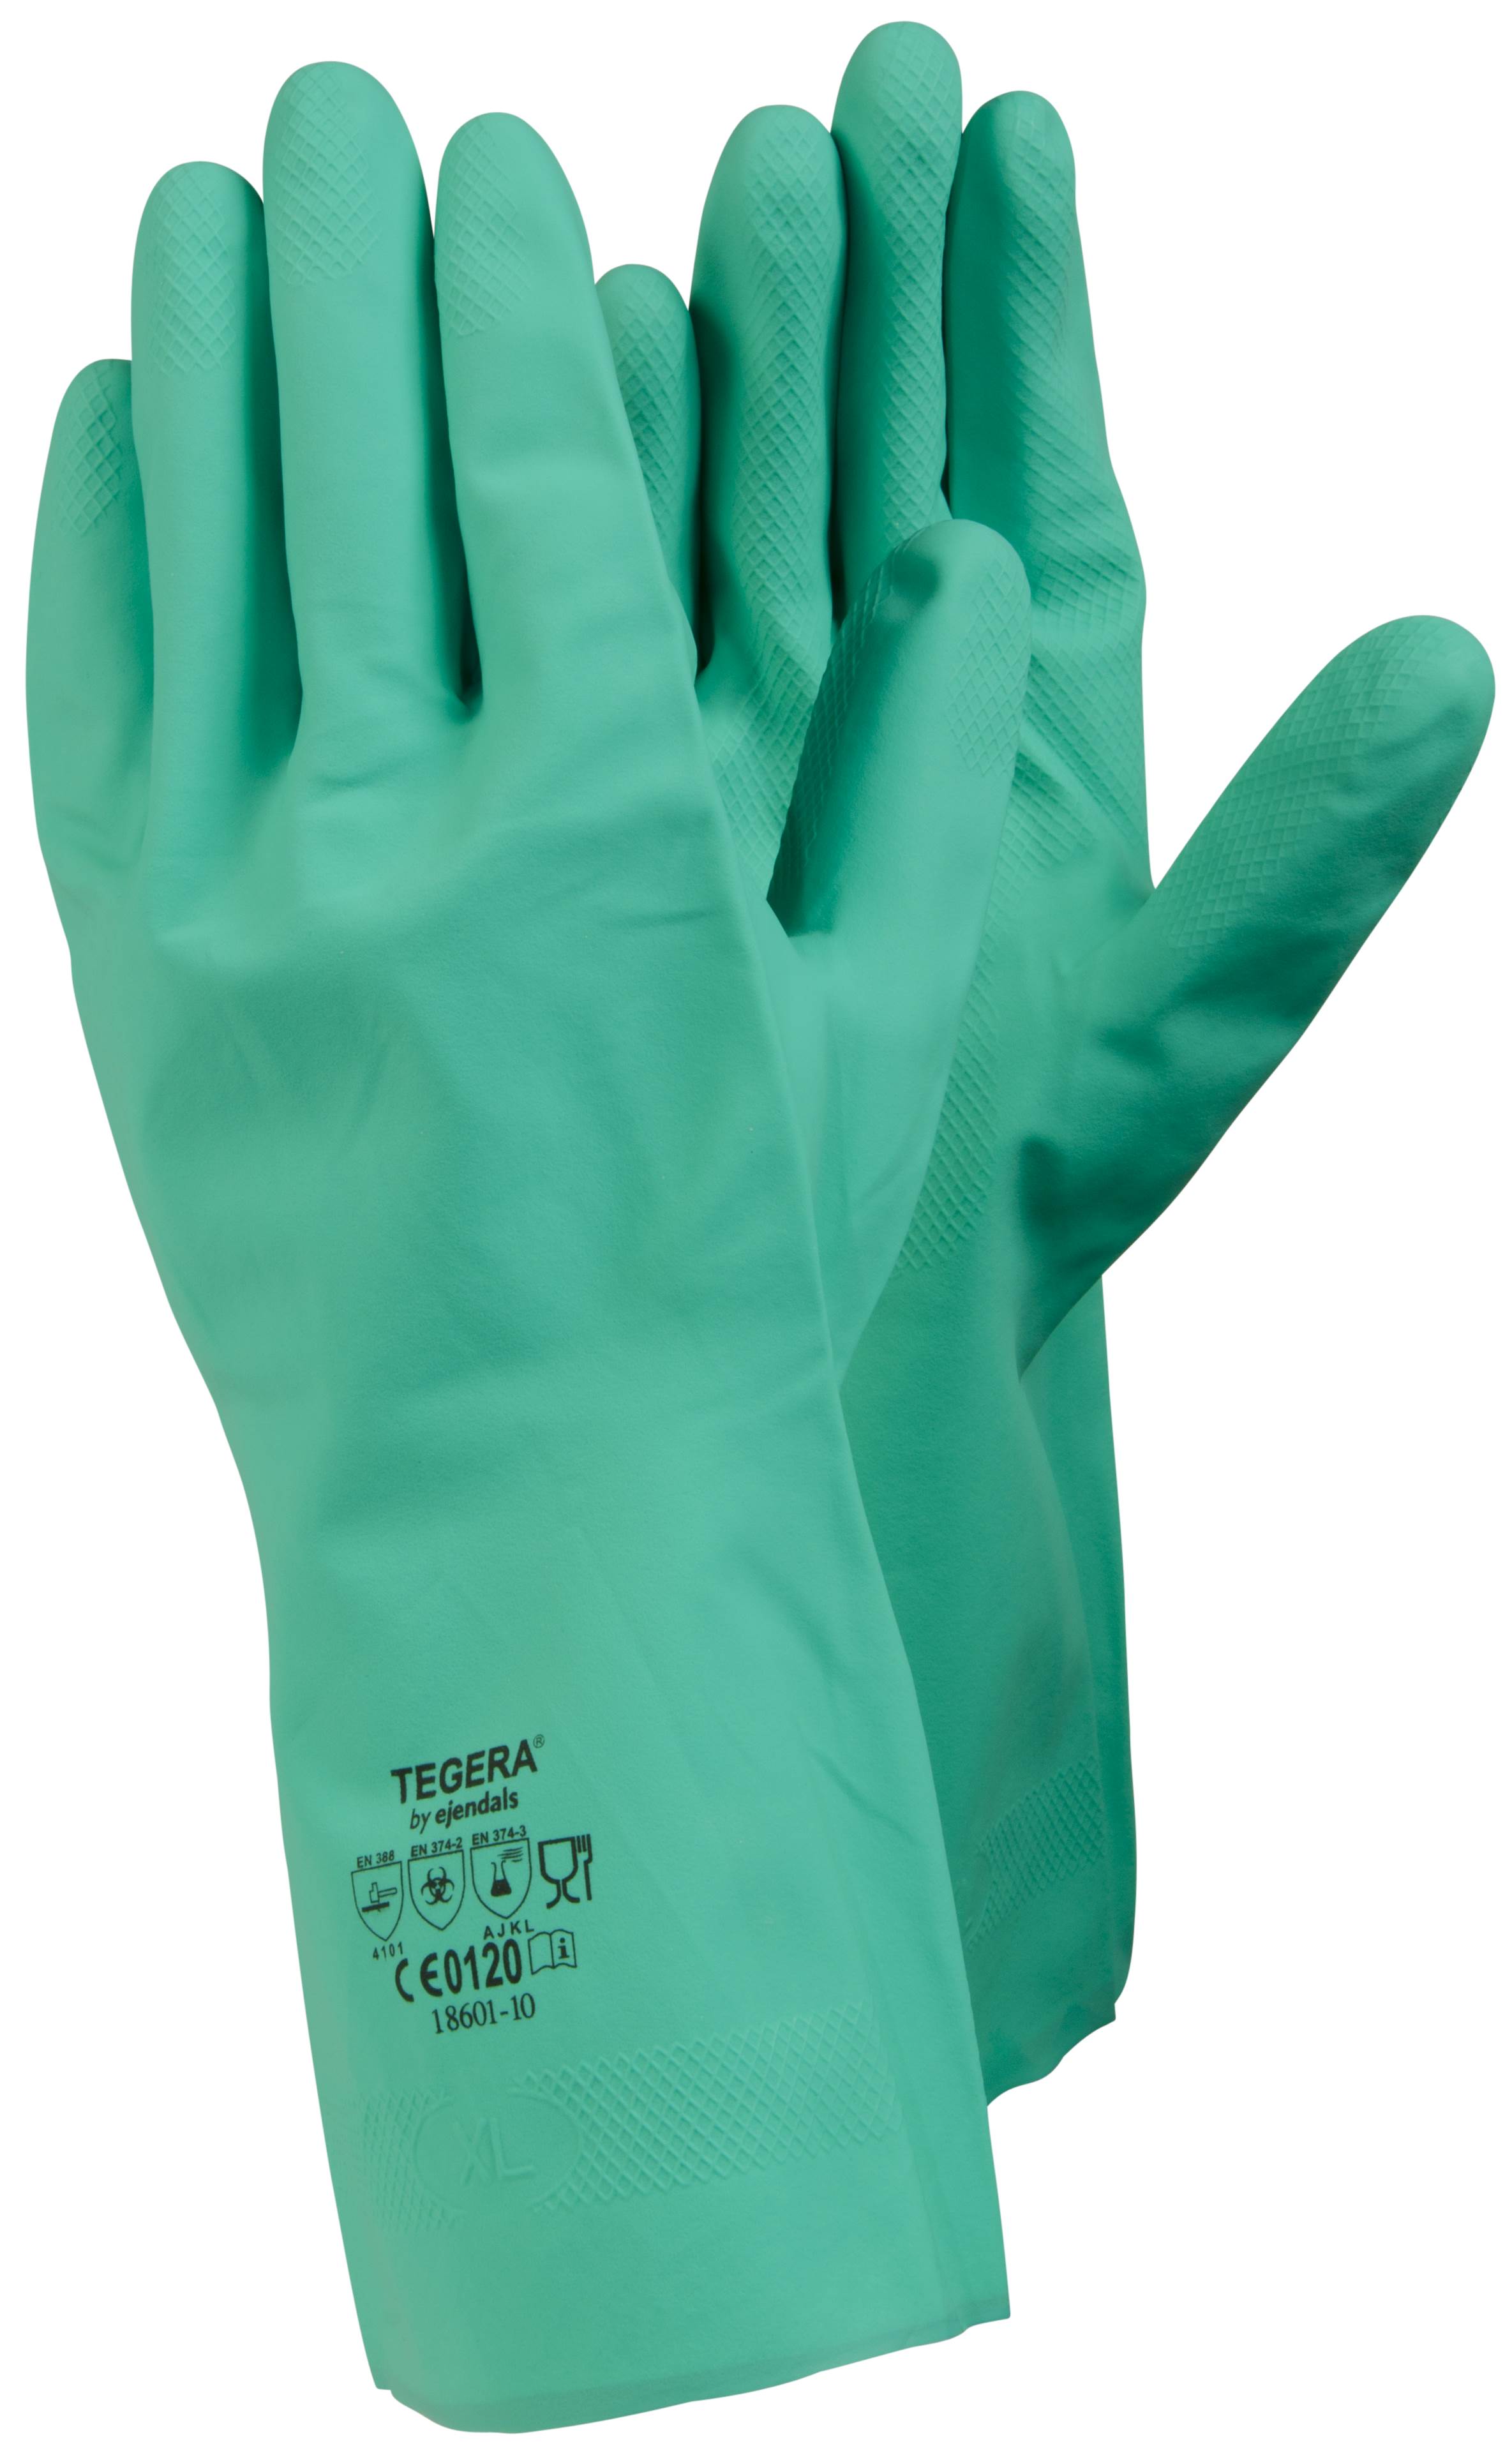 Gants de protection chimique TEGERA 18601 (x12 paires) - AFS - Application  Fast Set